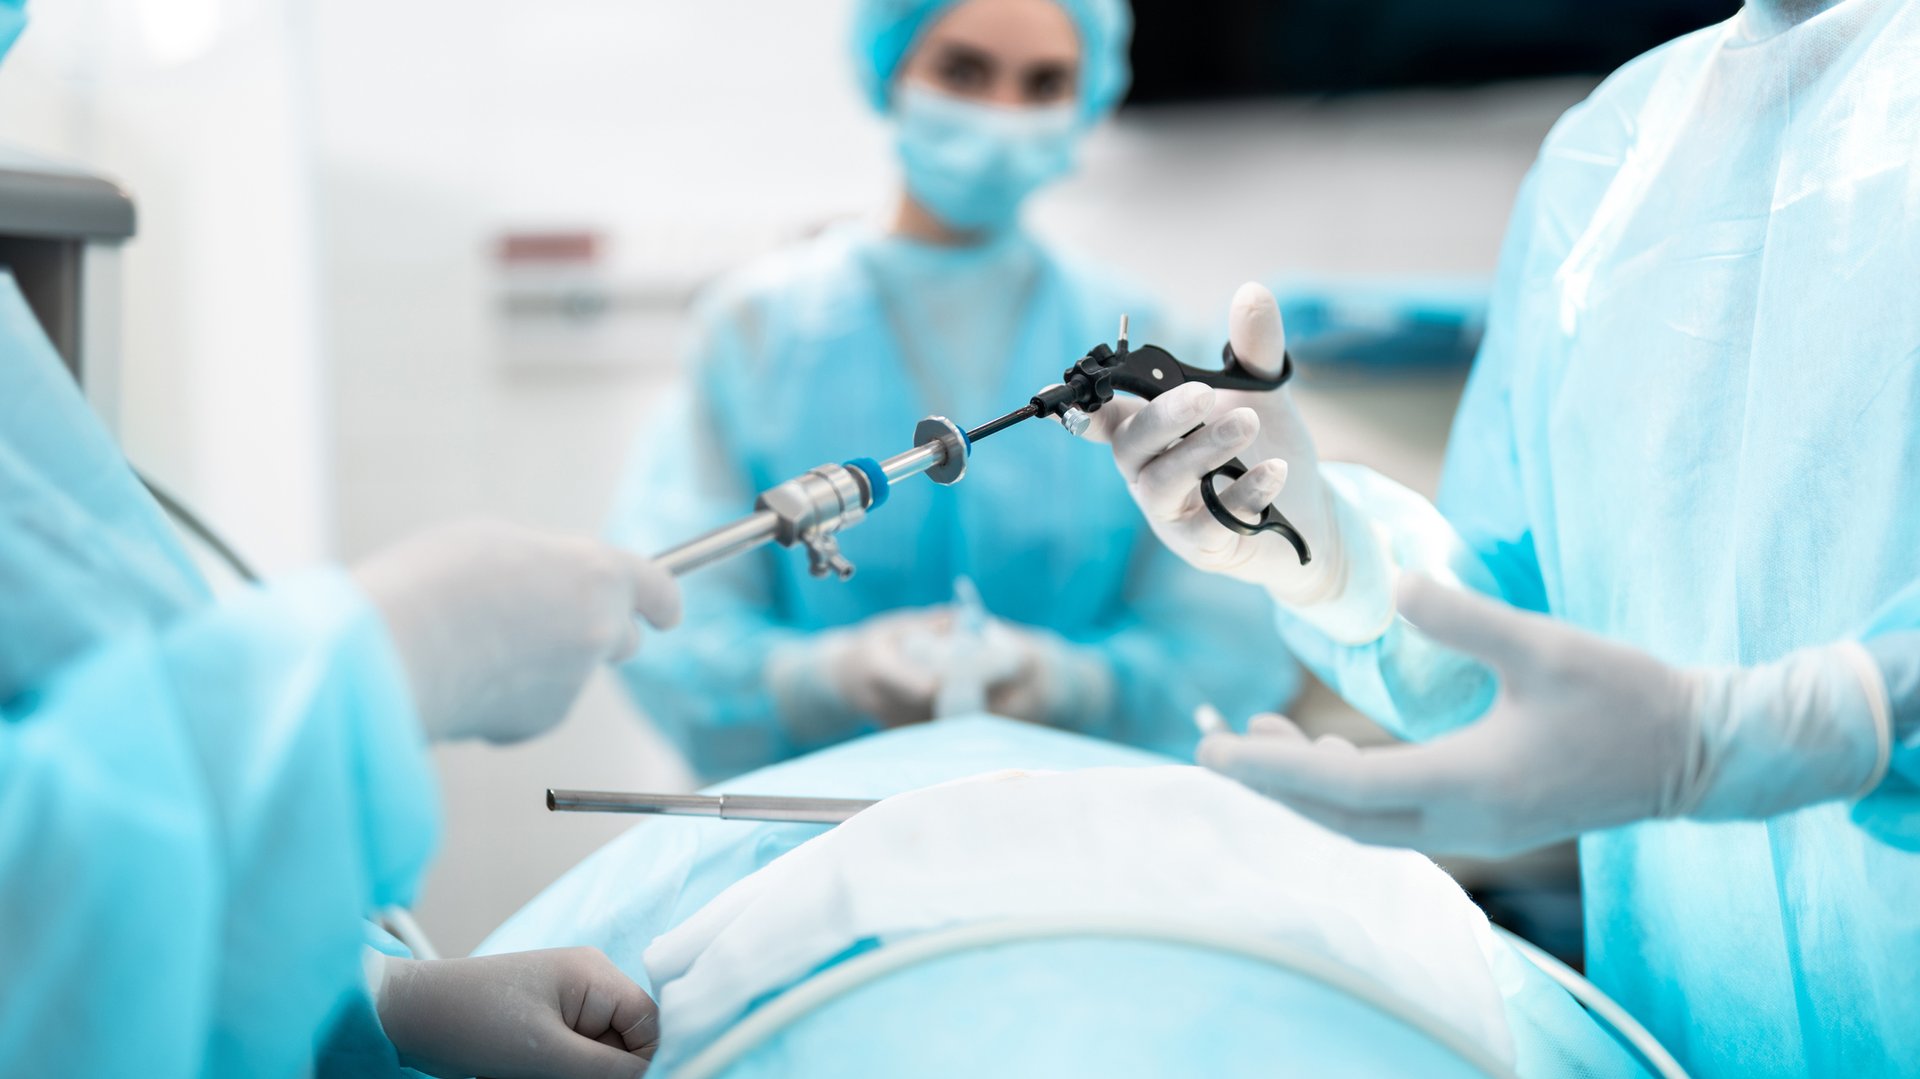 Bauchchirurgie - minimal-invasive Behandlung